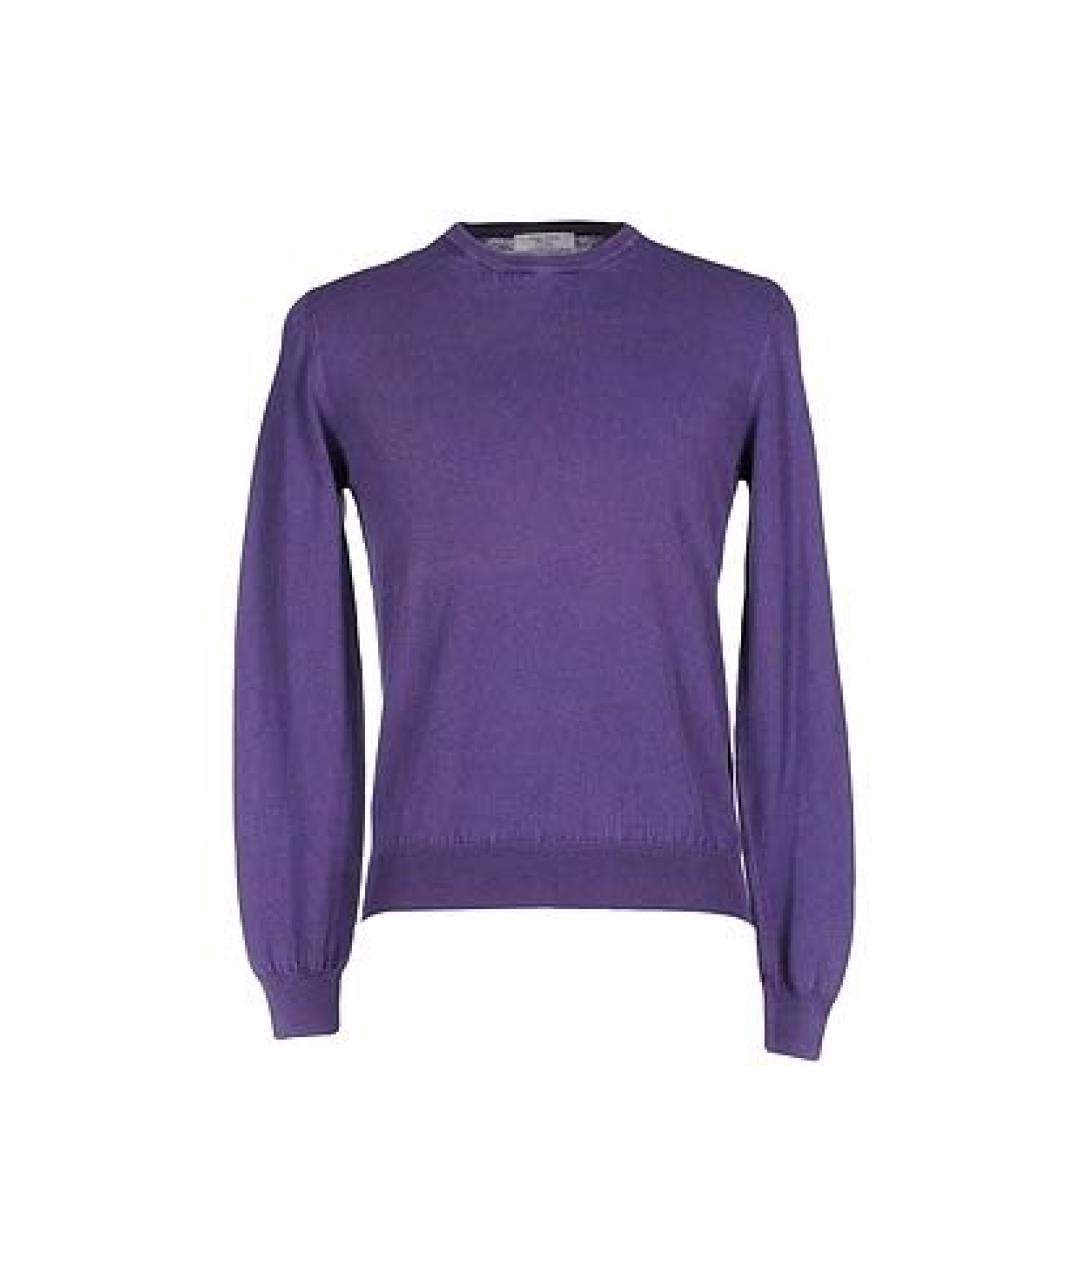 GRAN SASSO Фиолетовый хлопковый джемпер / свитер, фото 1